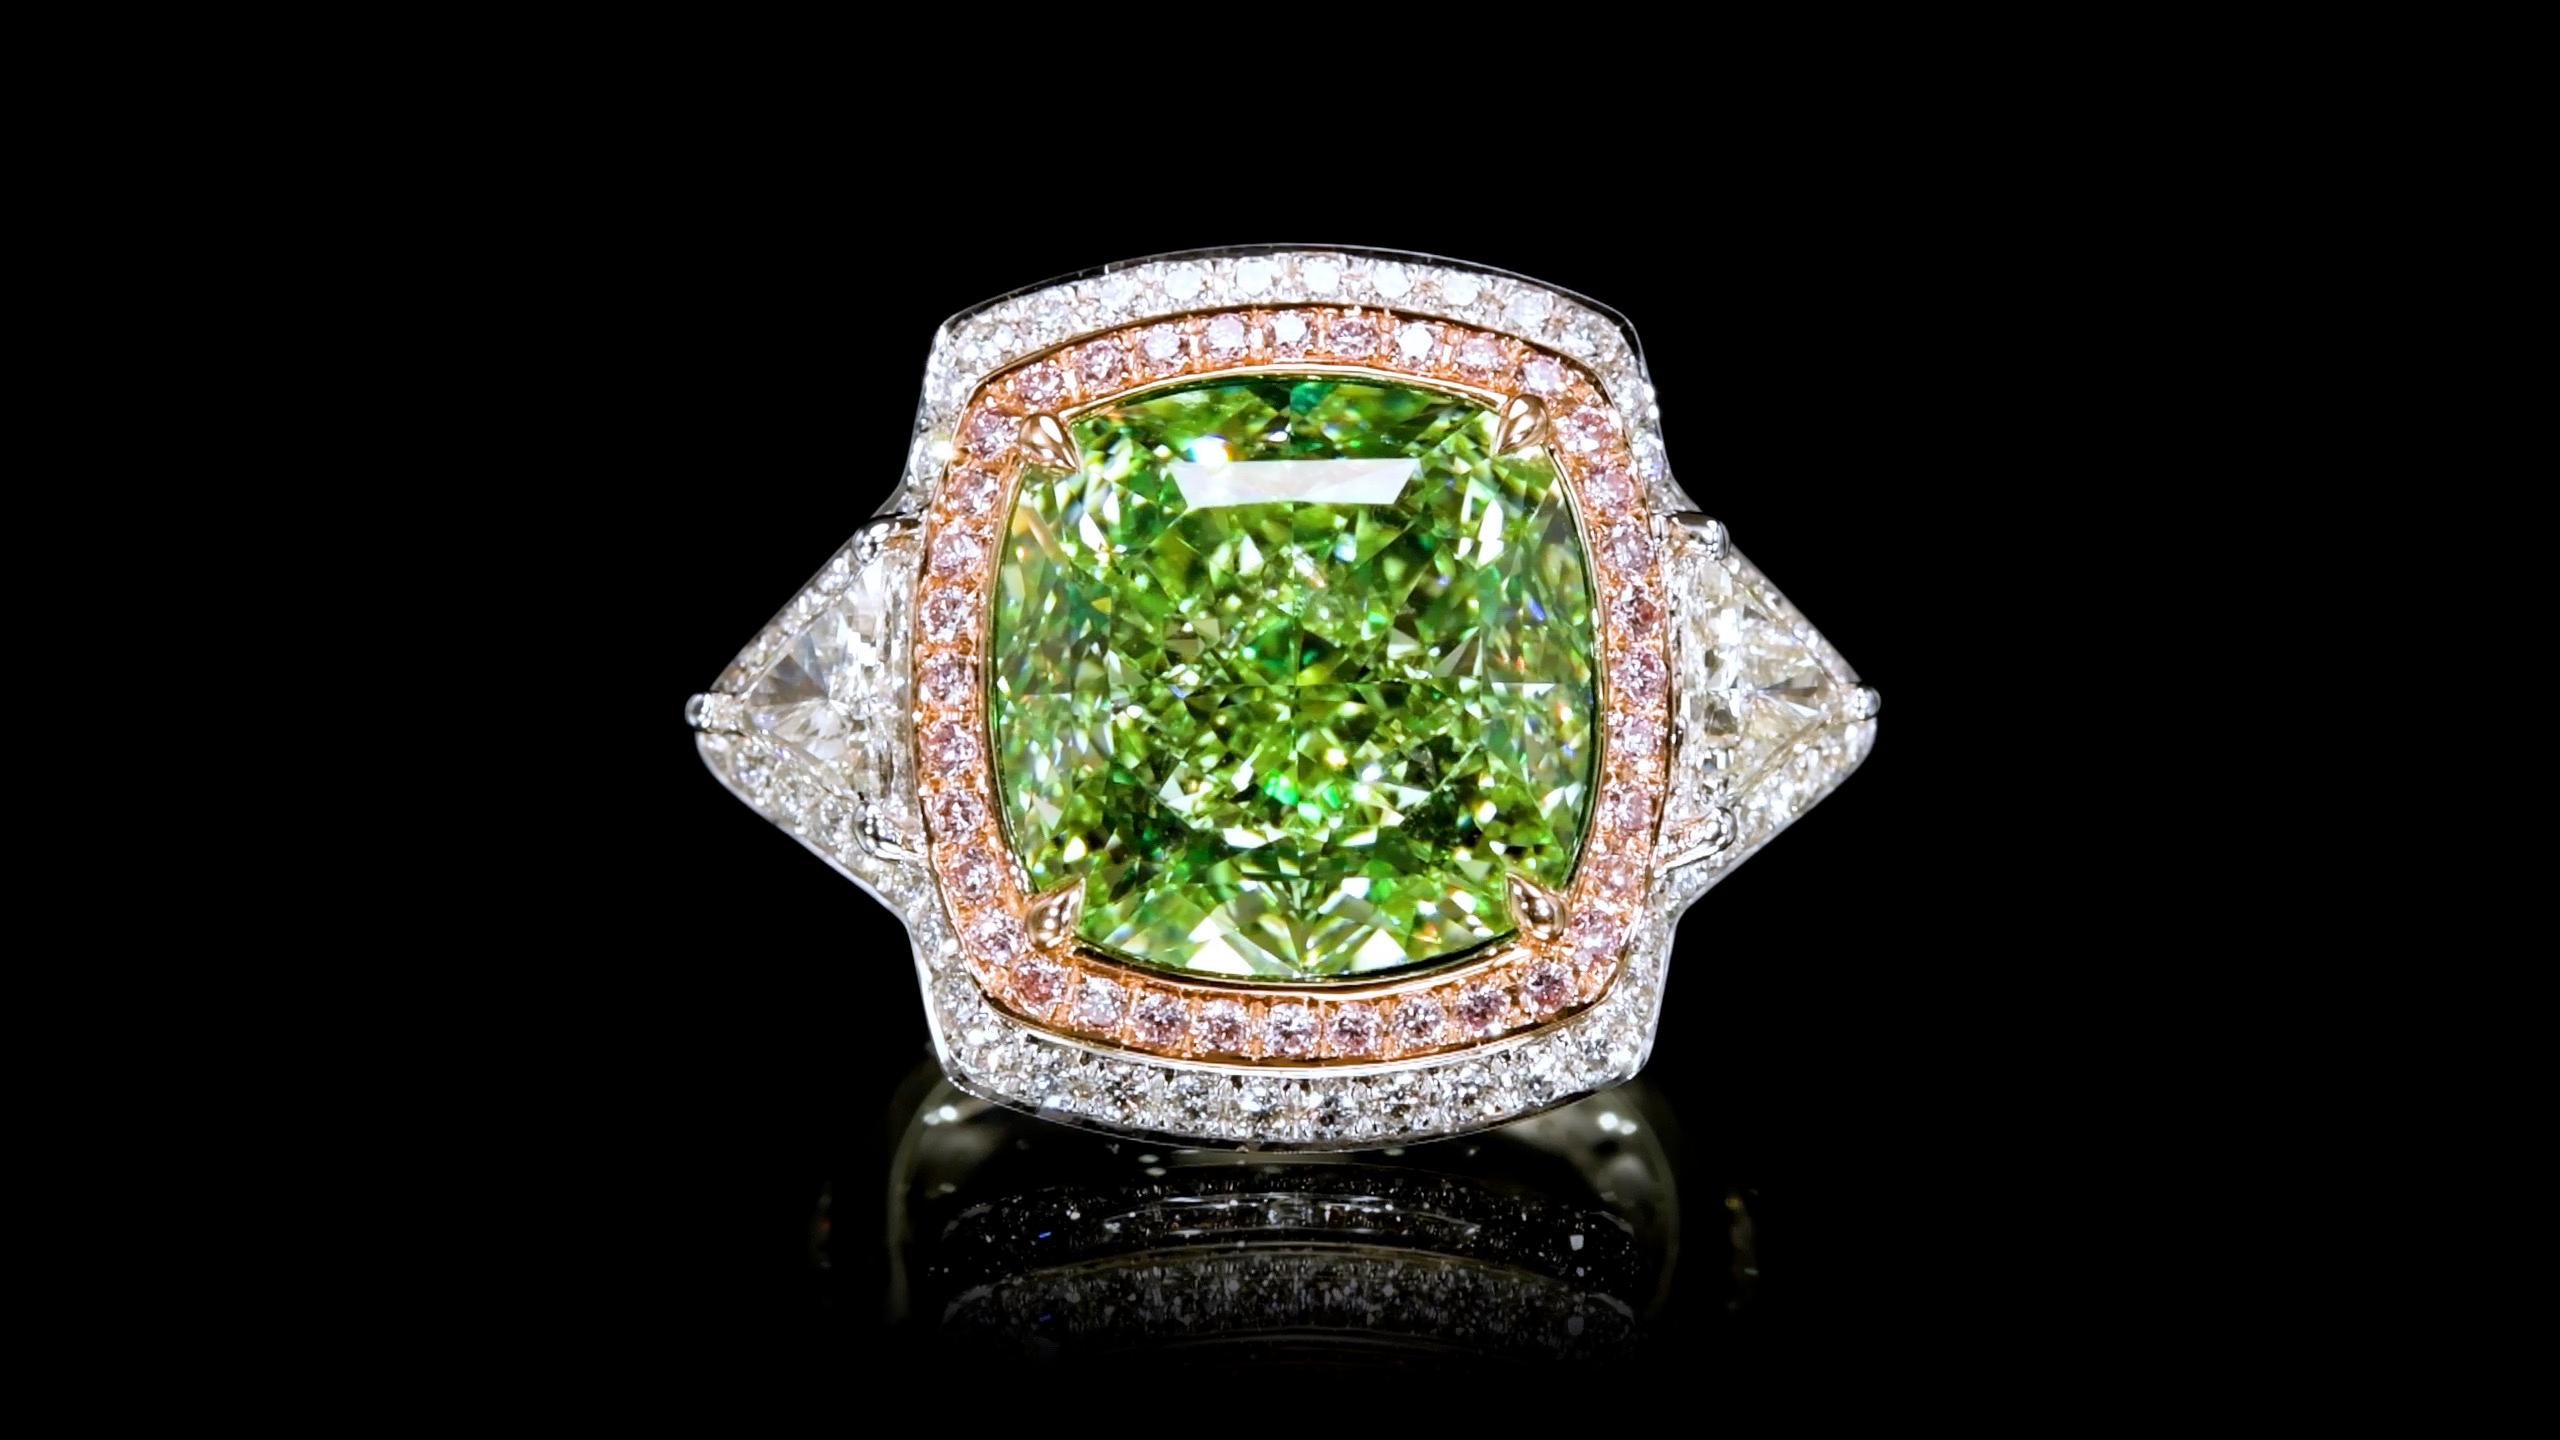 Emilio Jewelry New York est un revendeur réputé et respecté situé sur l'emblématique Cinquième Avenue de New York,

Nous nous spécialisons dans les bijoux uniques, et les diamants de couleur naturelle sont nos préférés ! 

Le point focal de cette